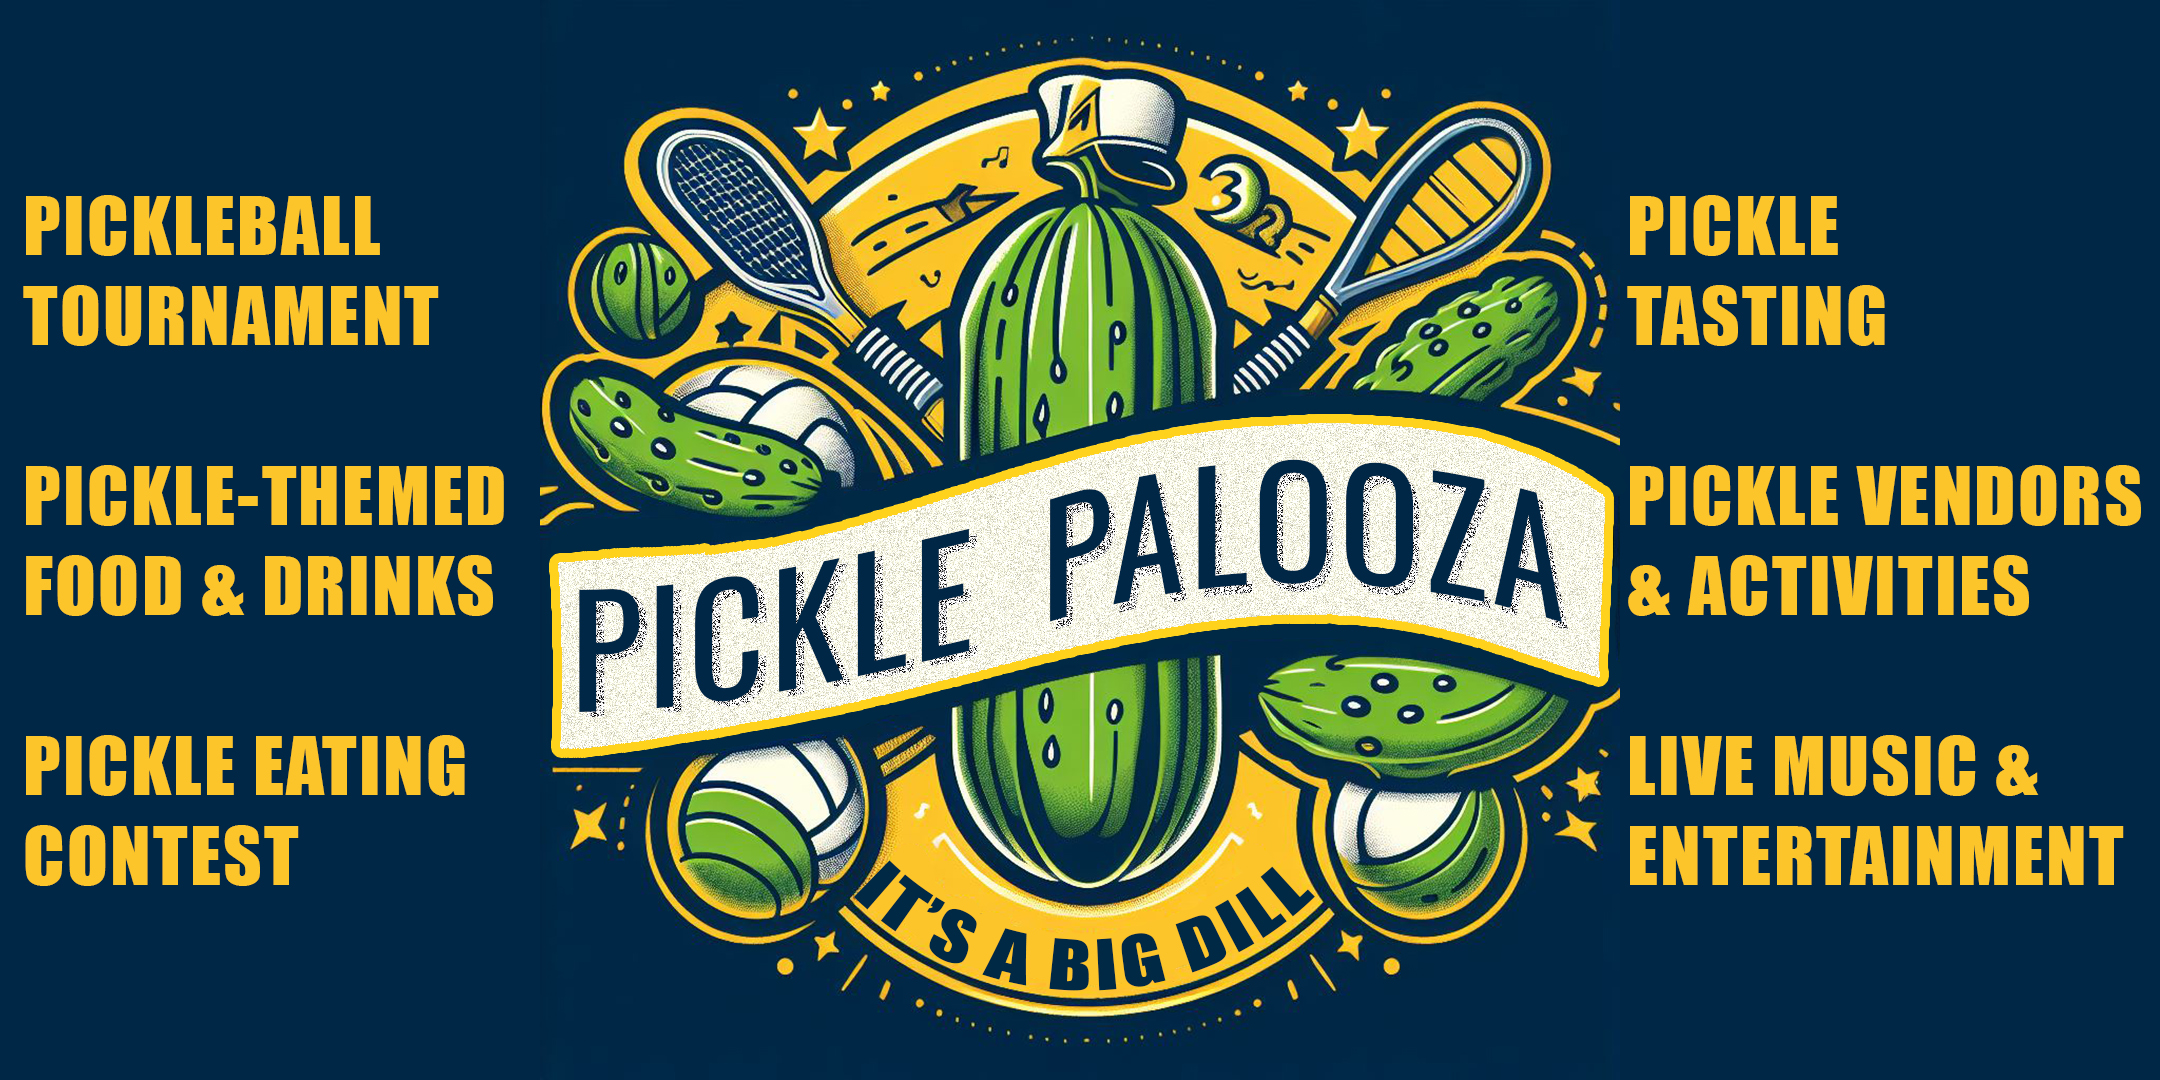 Pickle Palooza